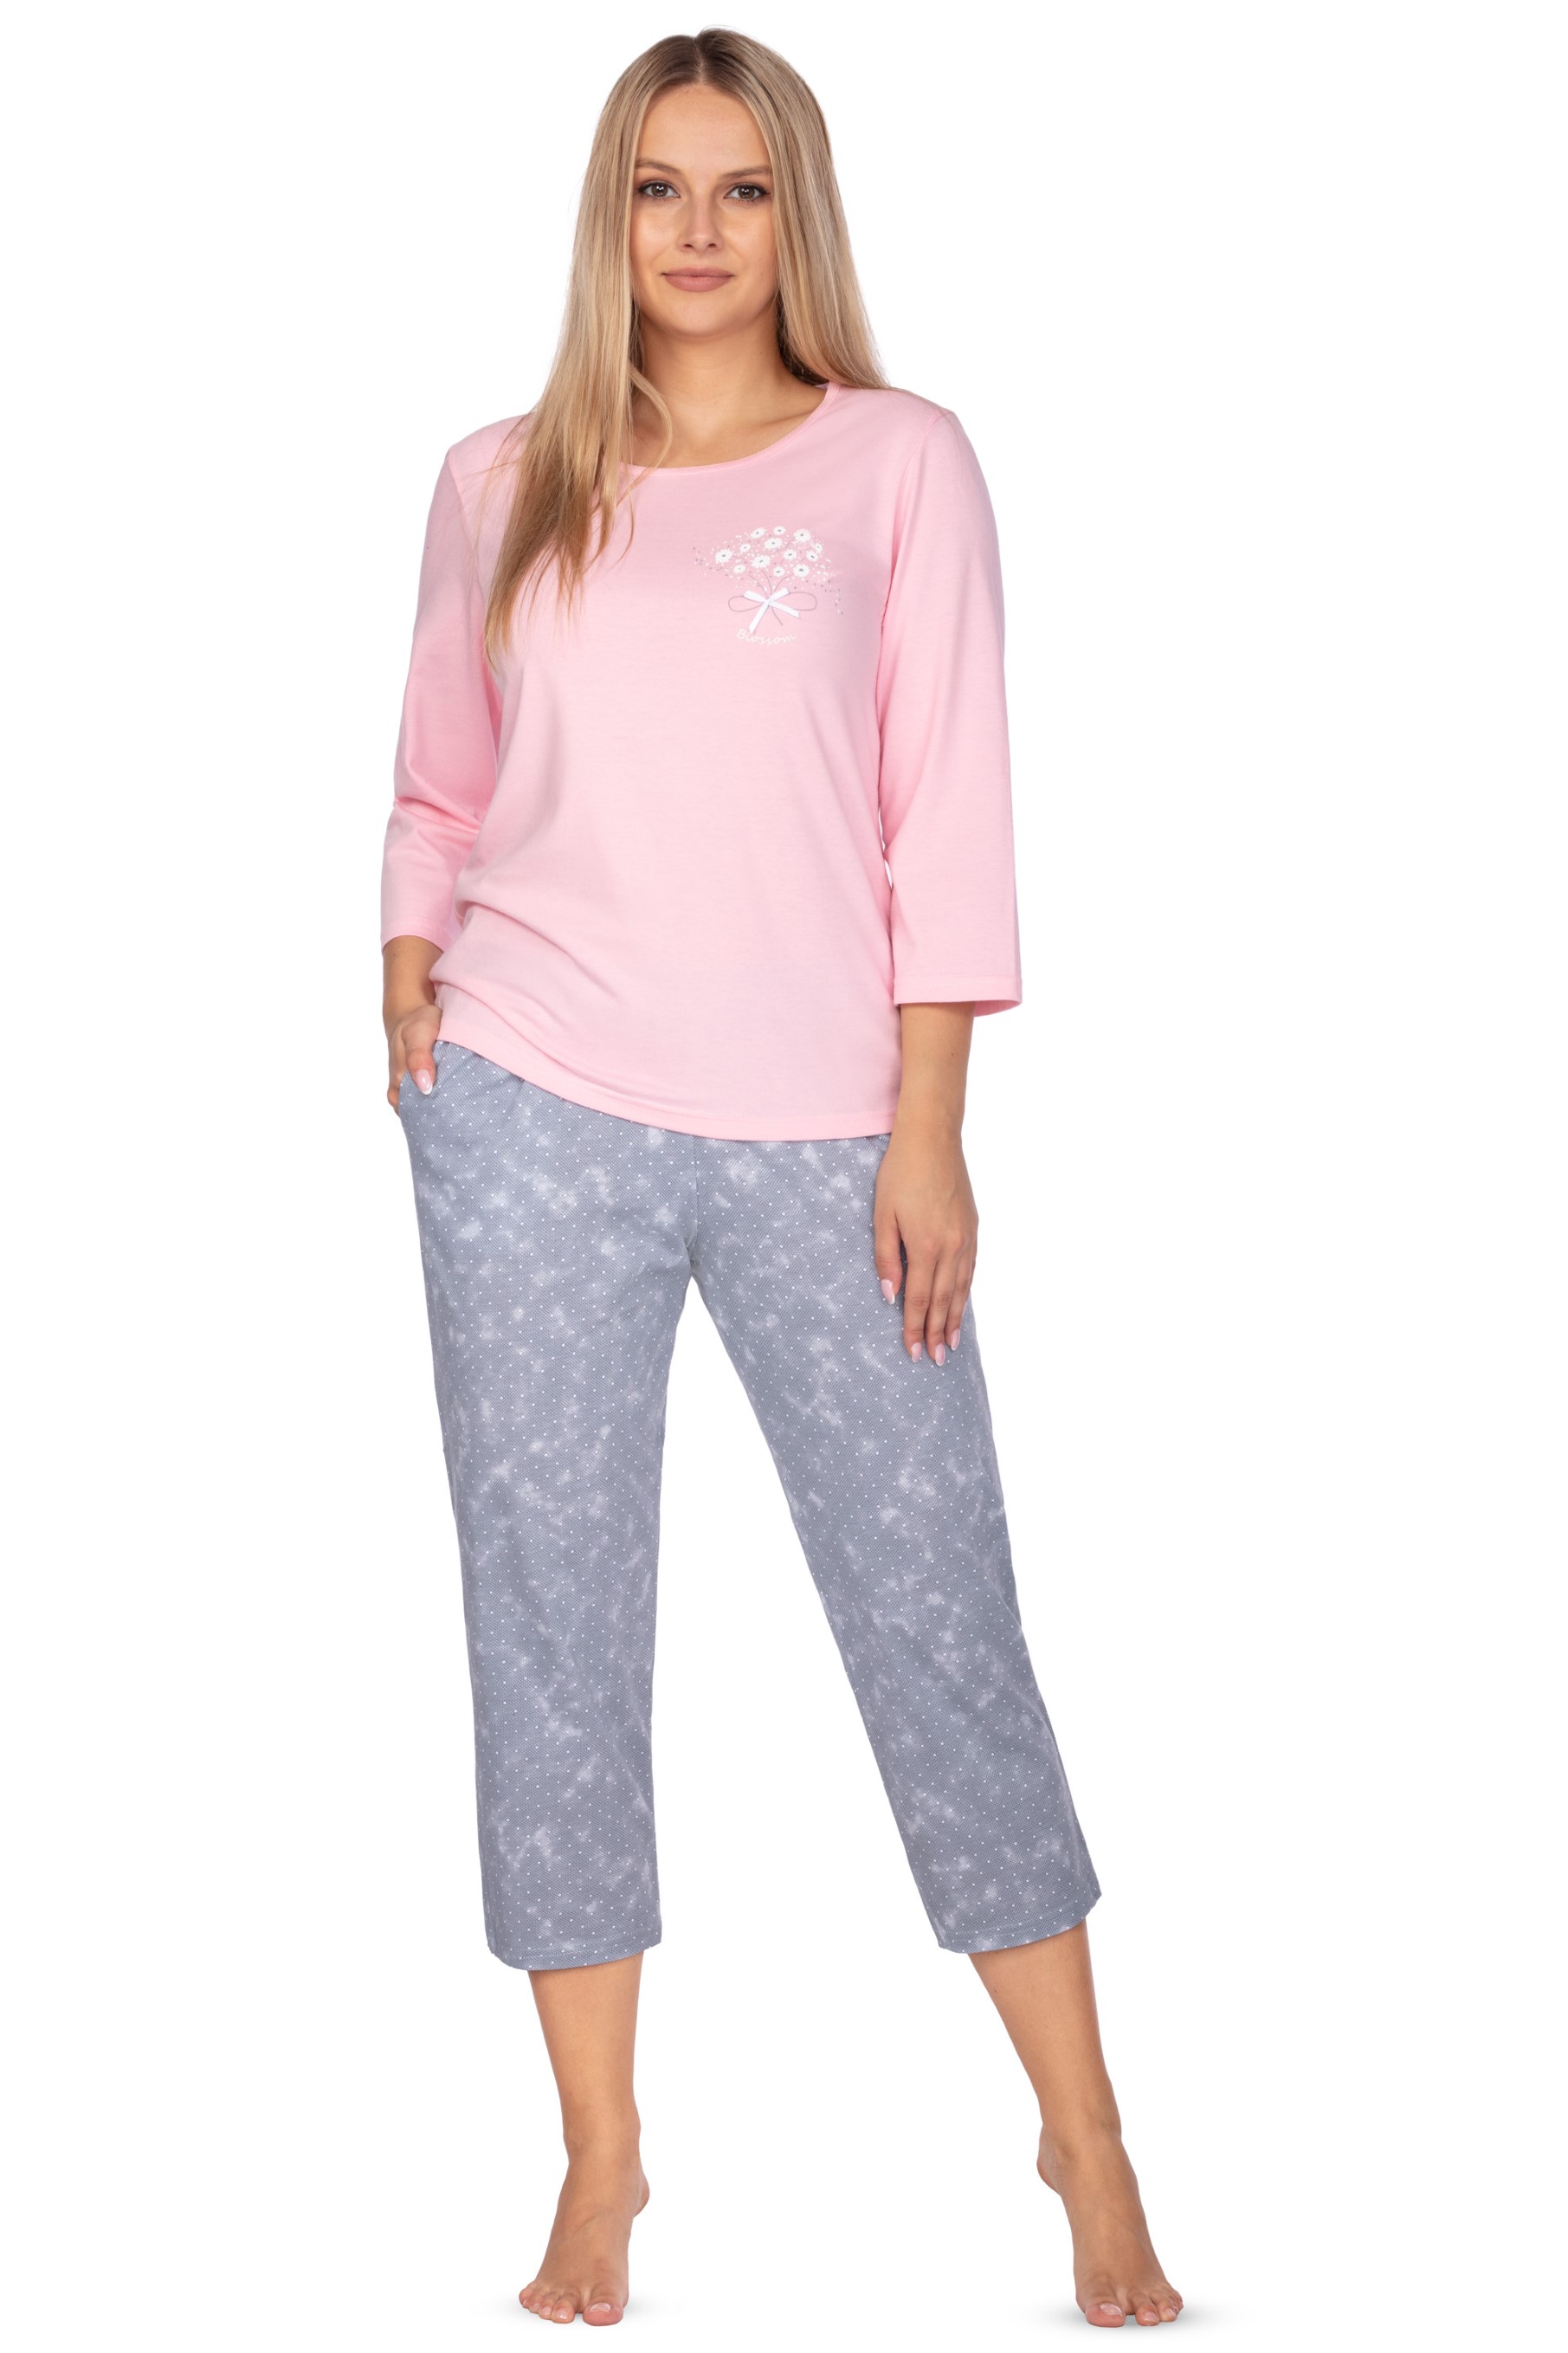 Regina 646 růžové 3/4 dámské pyžamo Barva: růžová, Velikost: 2XL